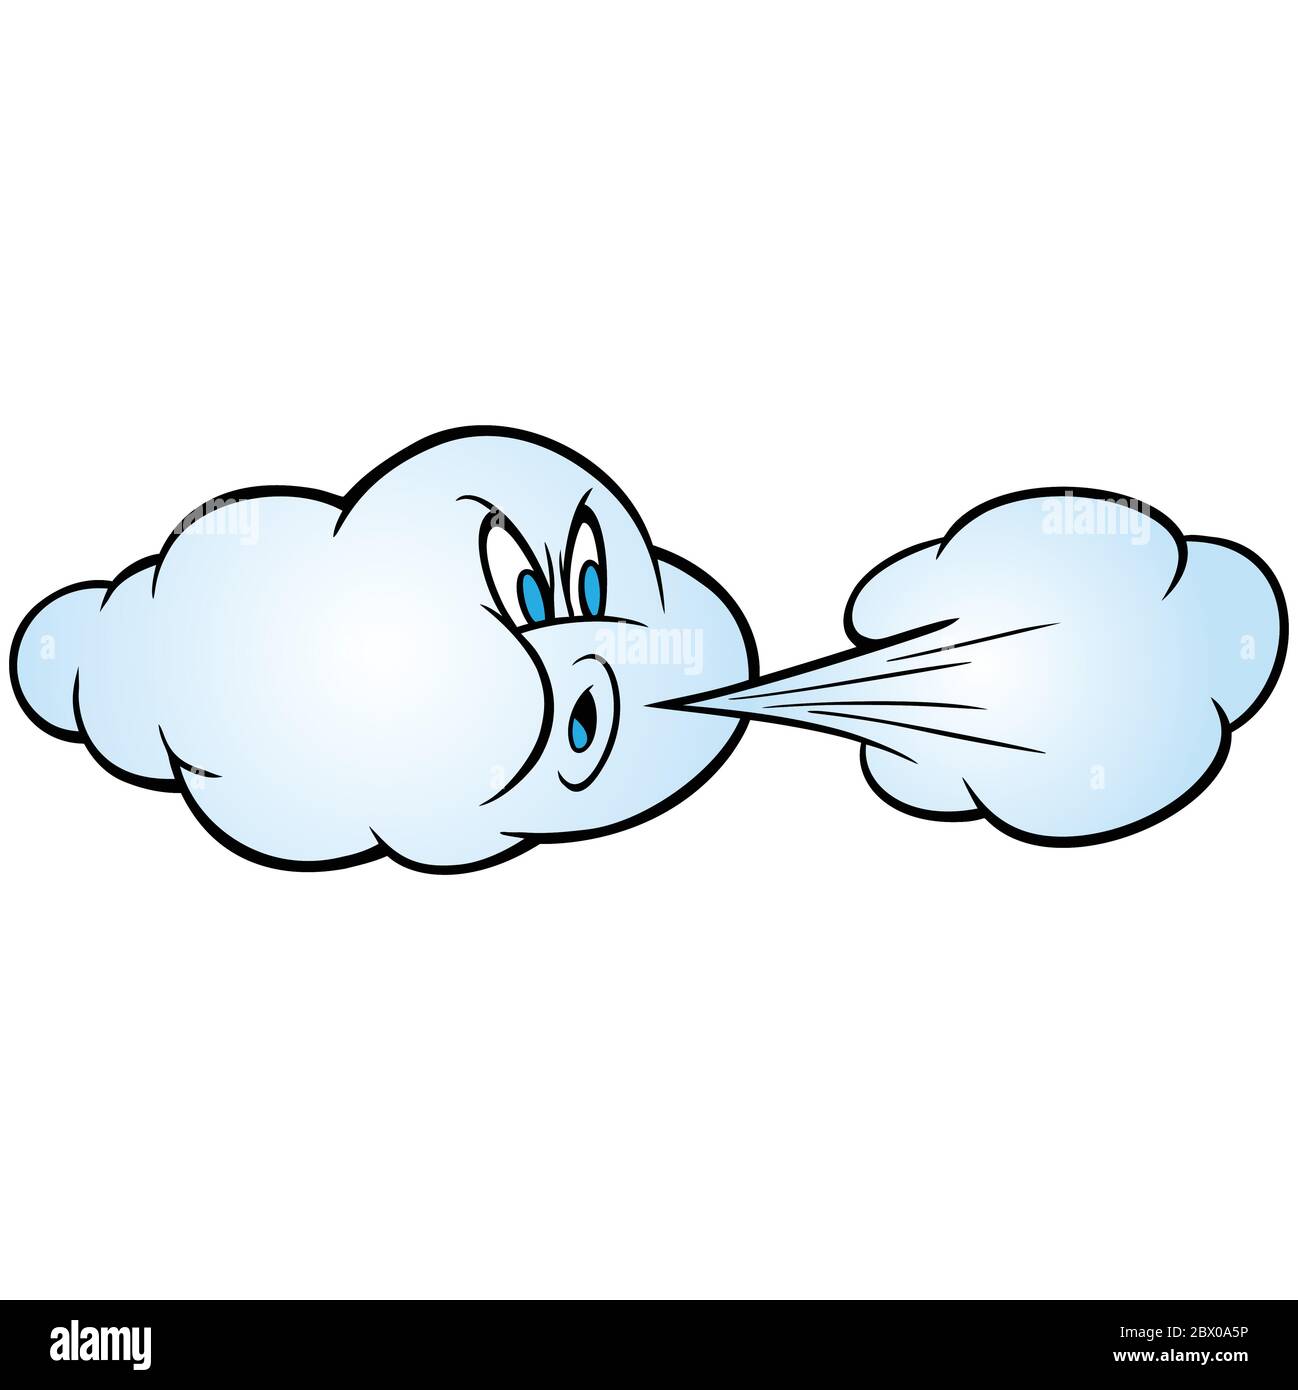 Viento soplando - una ilustración de dibujos animados de una nube soplando  un poco de aire frío Imagen Vector de stock - Alamy